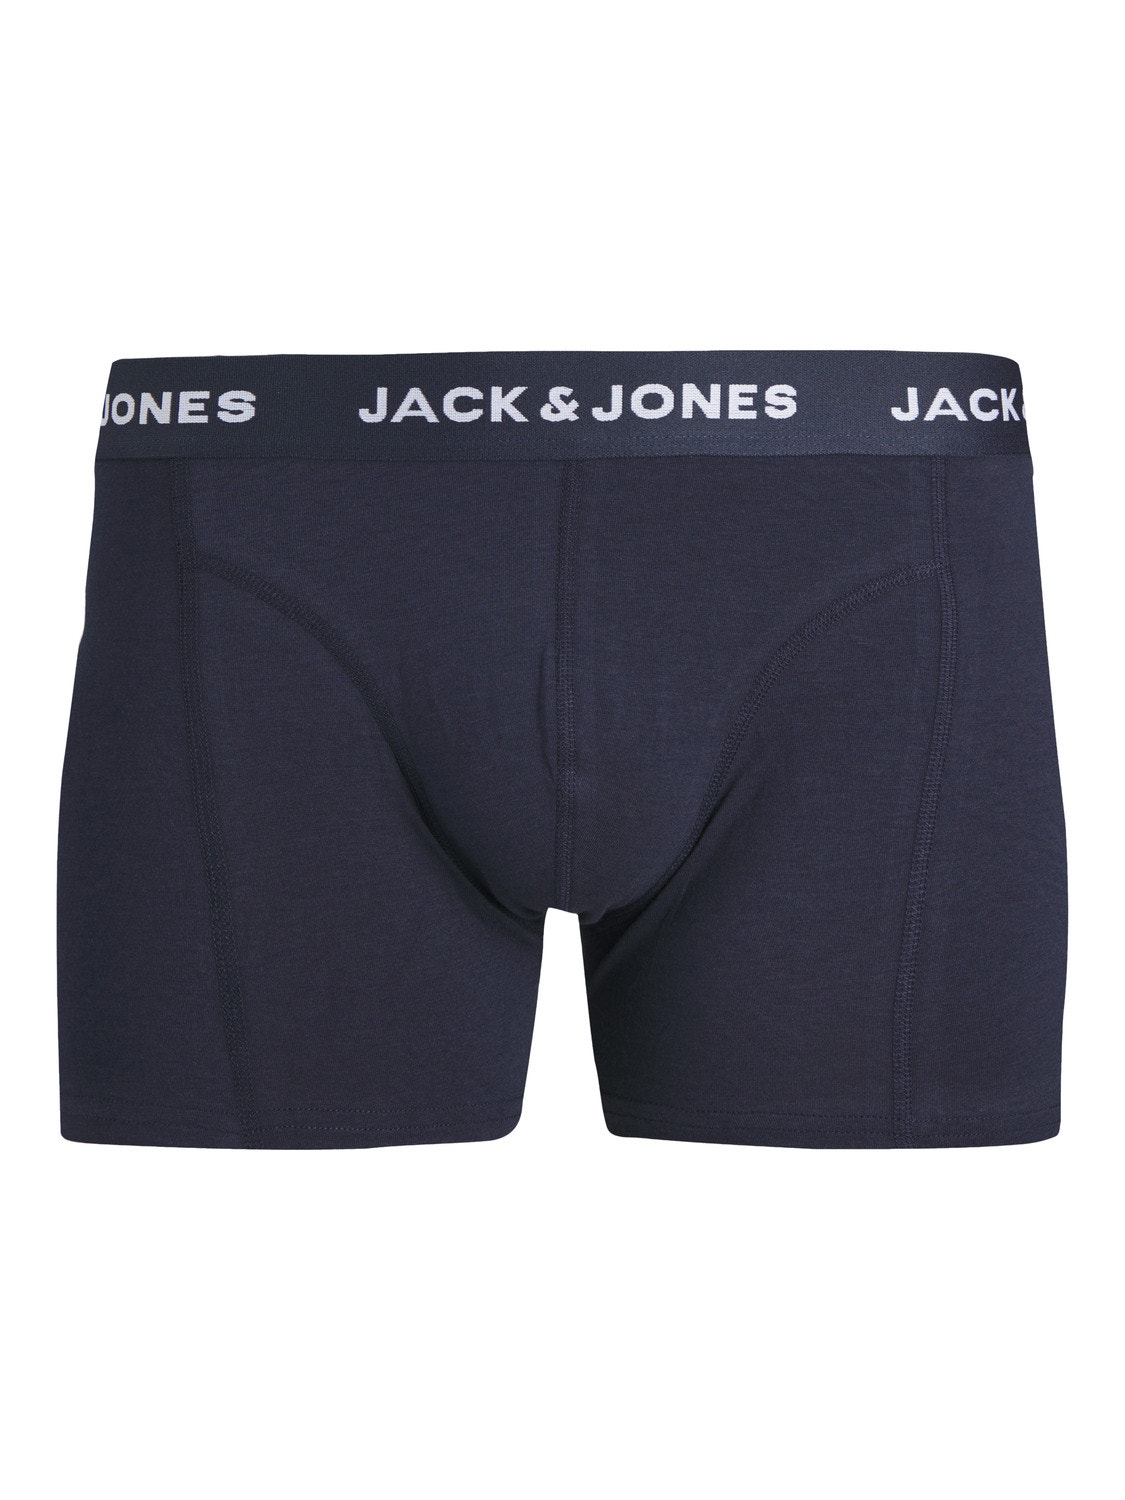 Jack & Jones 3-pakuotės Trumpikės -Navy Blazer - 12251471